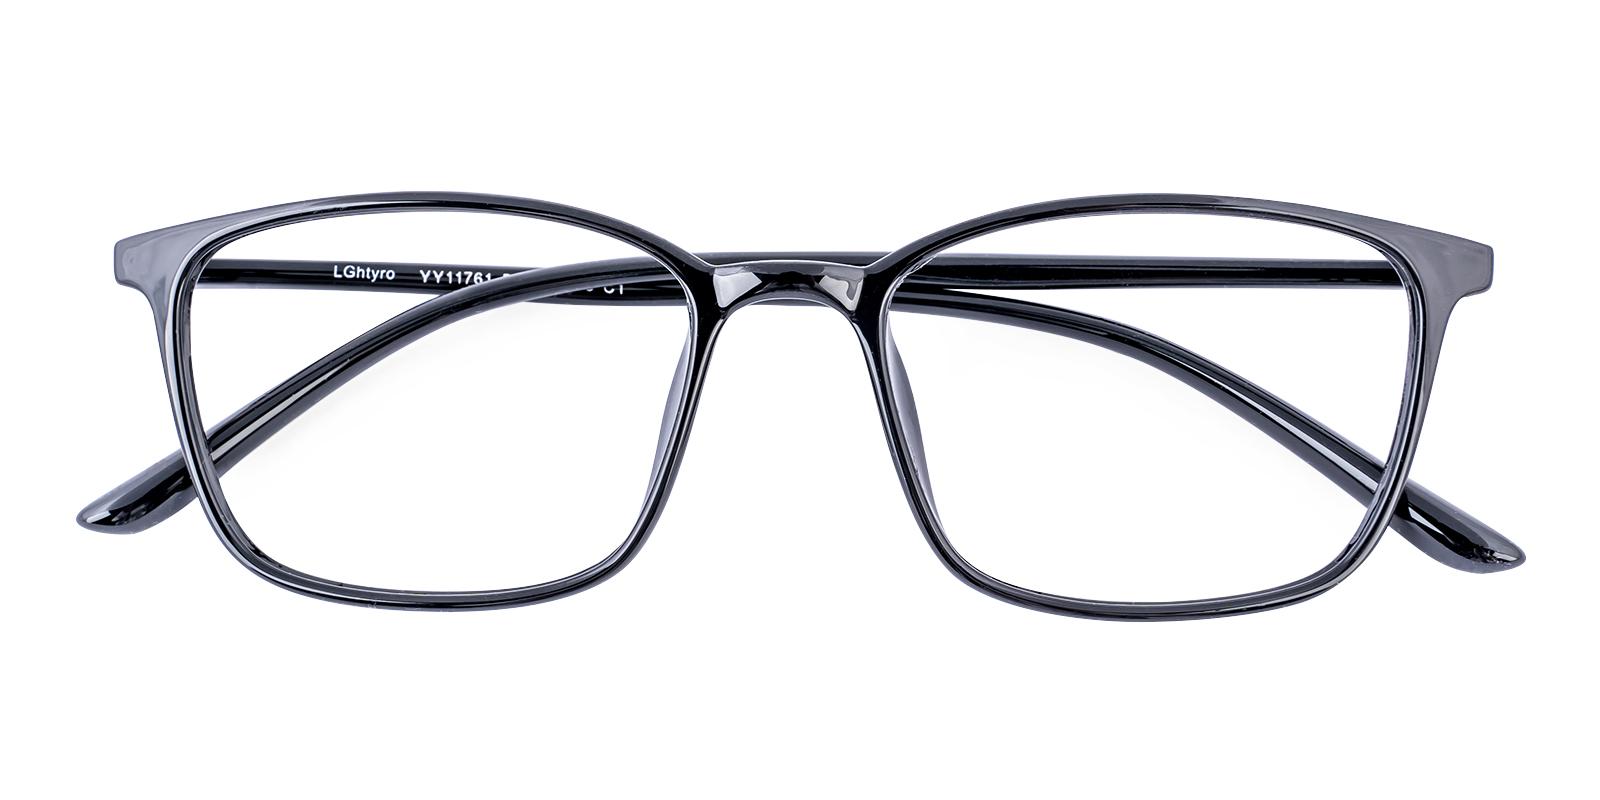 Polit Black TR Eyeglasses , UniversalBridgeFit Frames from ABBE Glasses